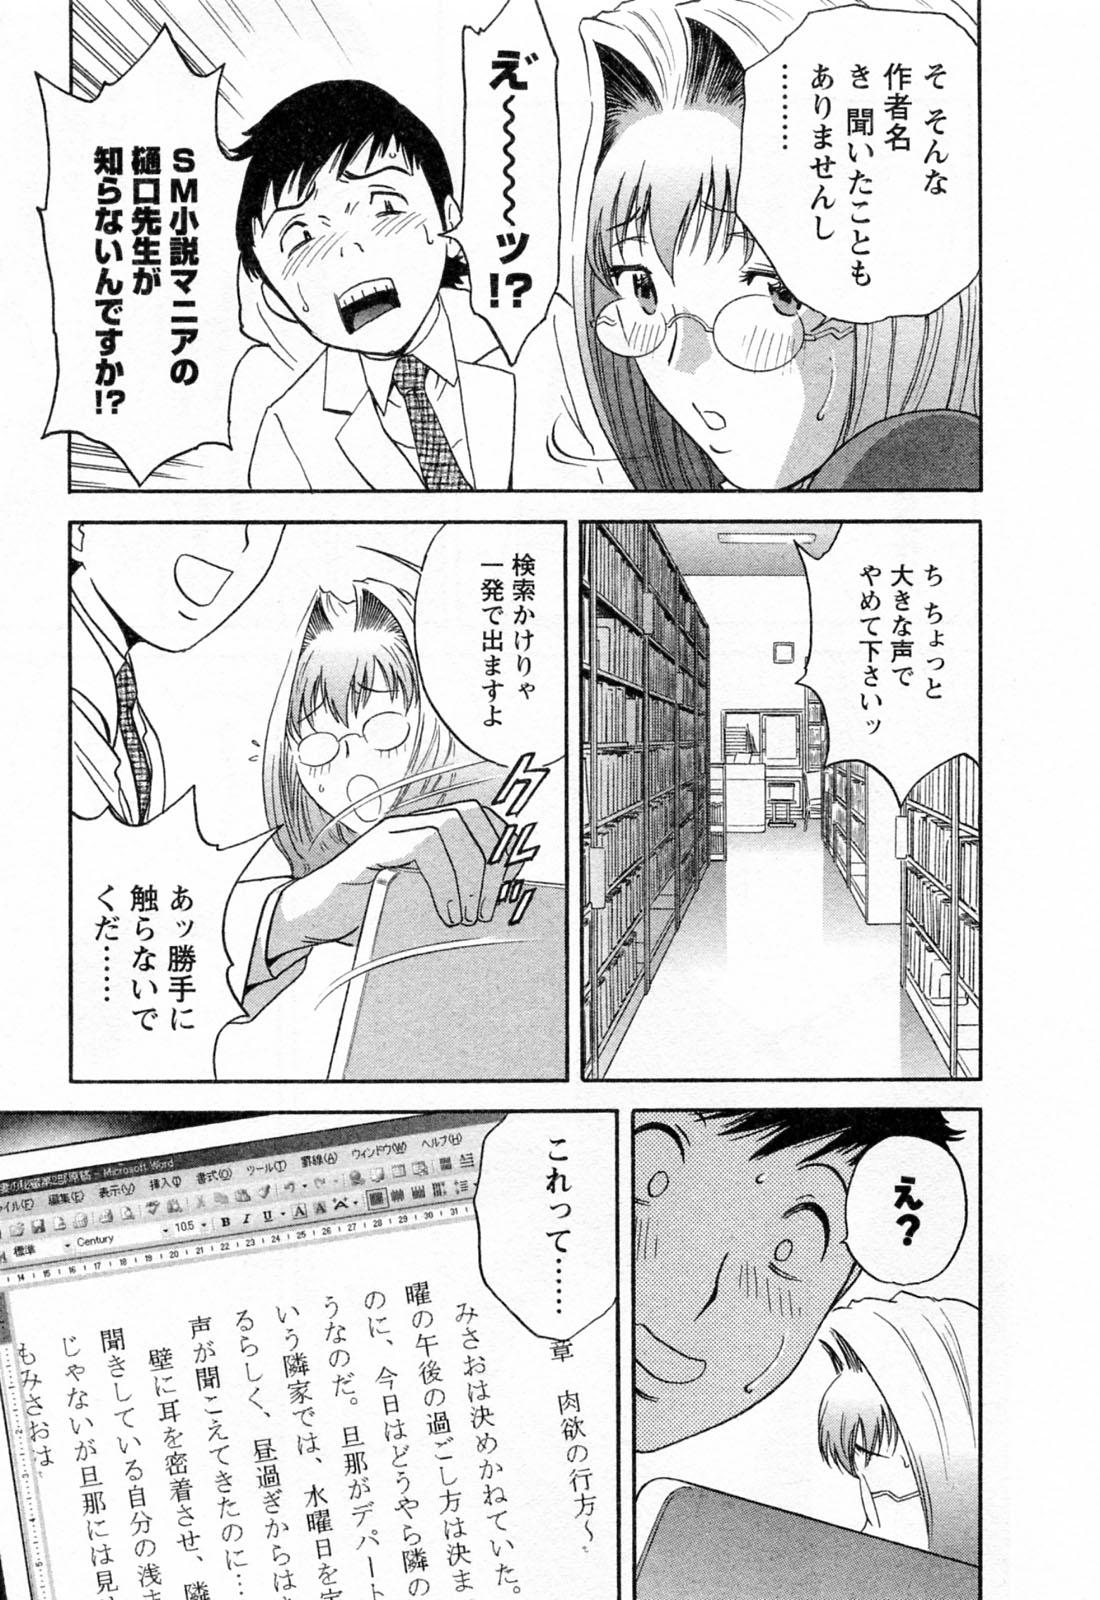 [Hidemaru] Mo-Retsu! Boin Sensei (Boing Boing Teacher) Vol.4 16